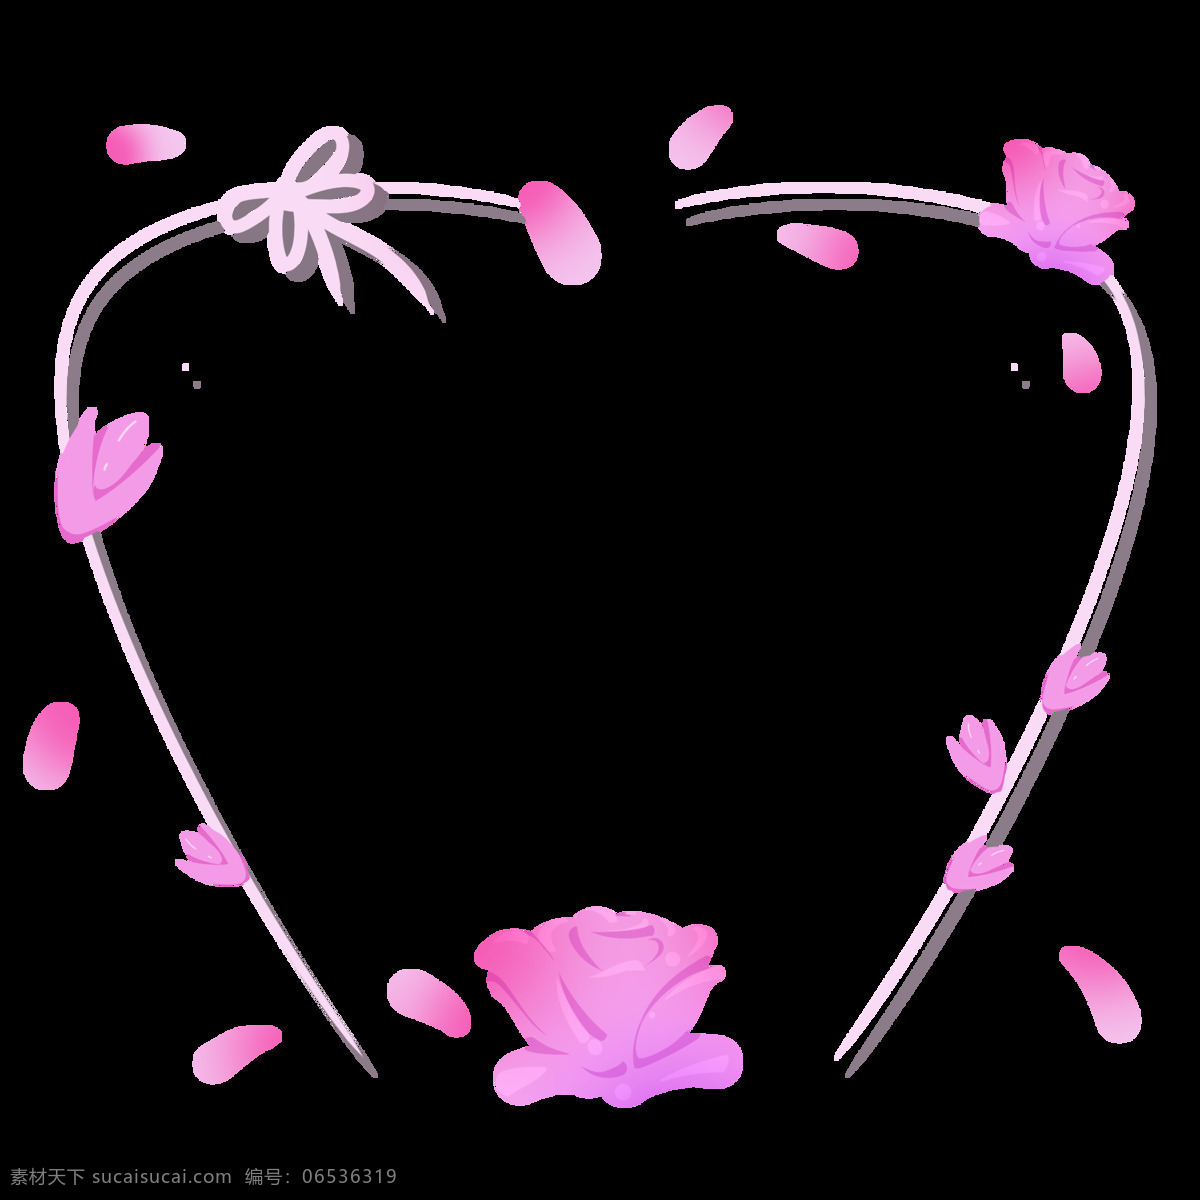 粉色 爱心 边框 插画 粉色边框 创意花瓣装饰 状 玫瑰装饰画 立体线条边框 唯美 装饰画